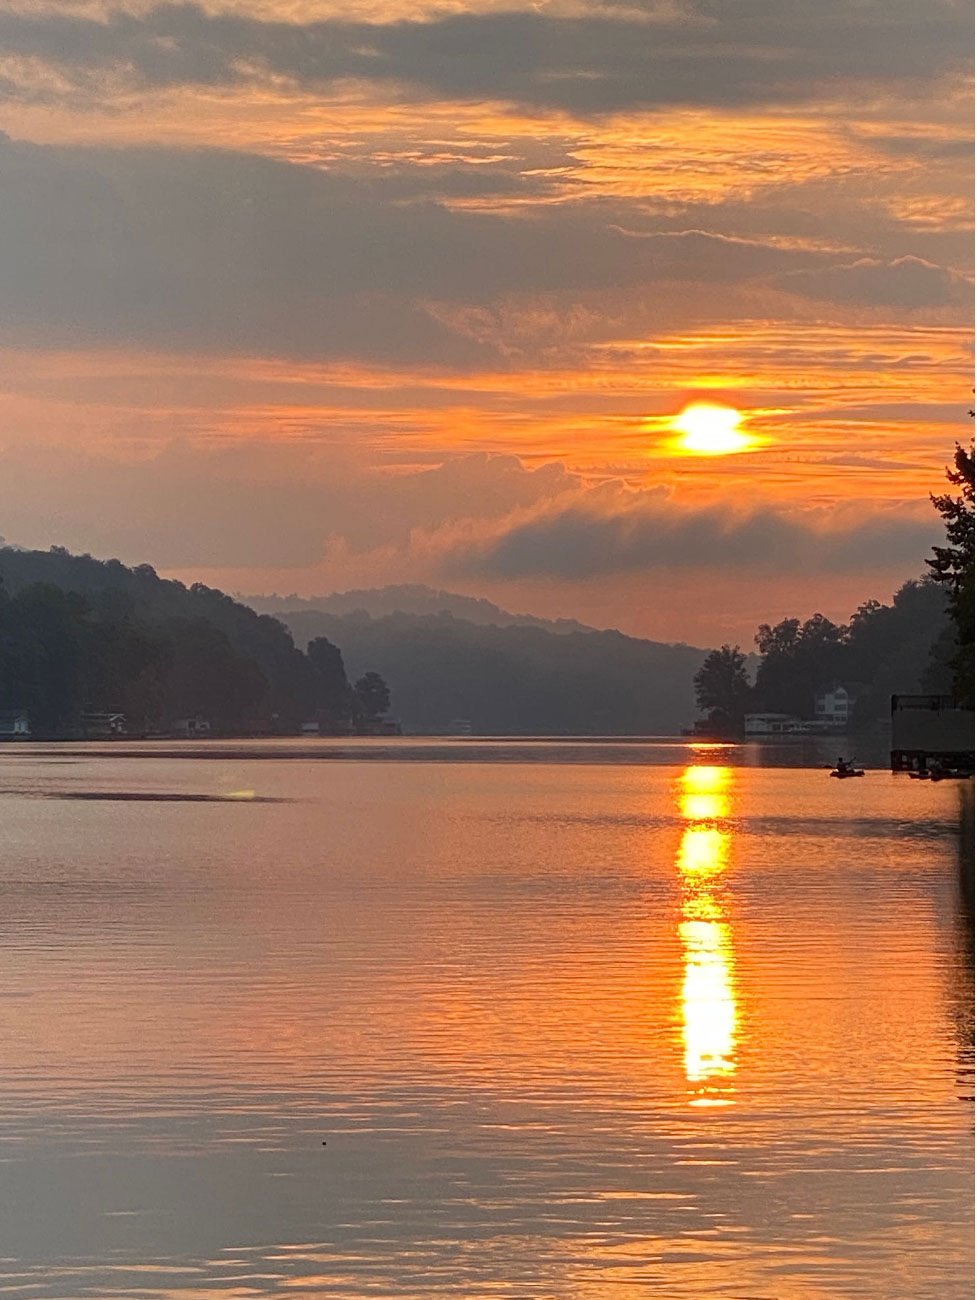 Sunset at Lake Lure, NC